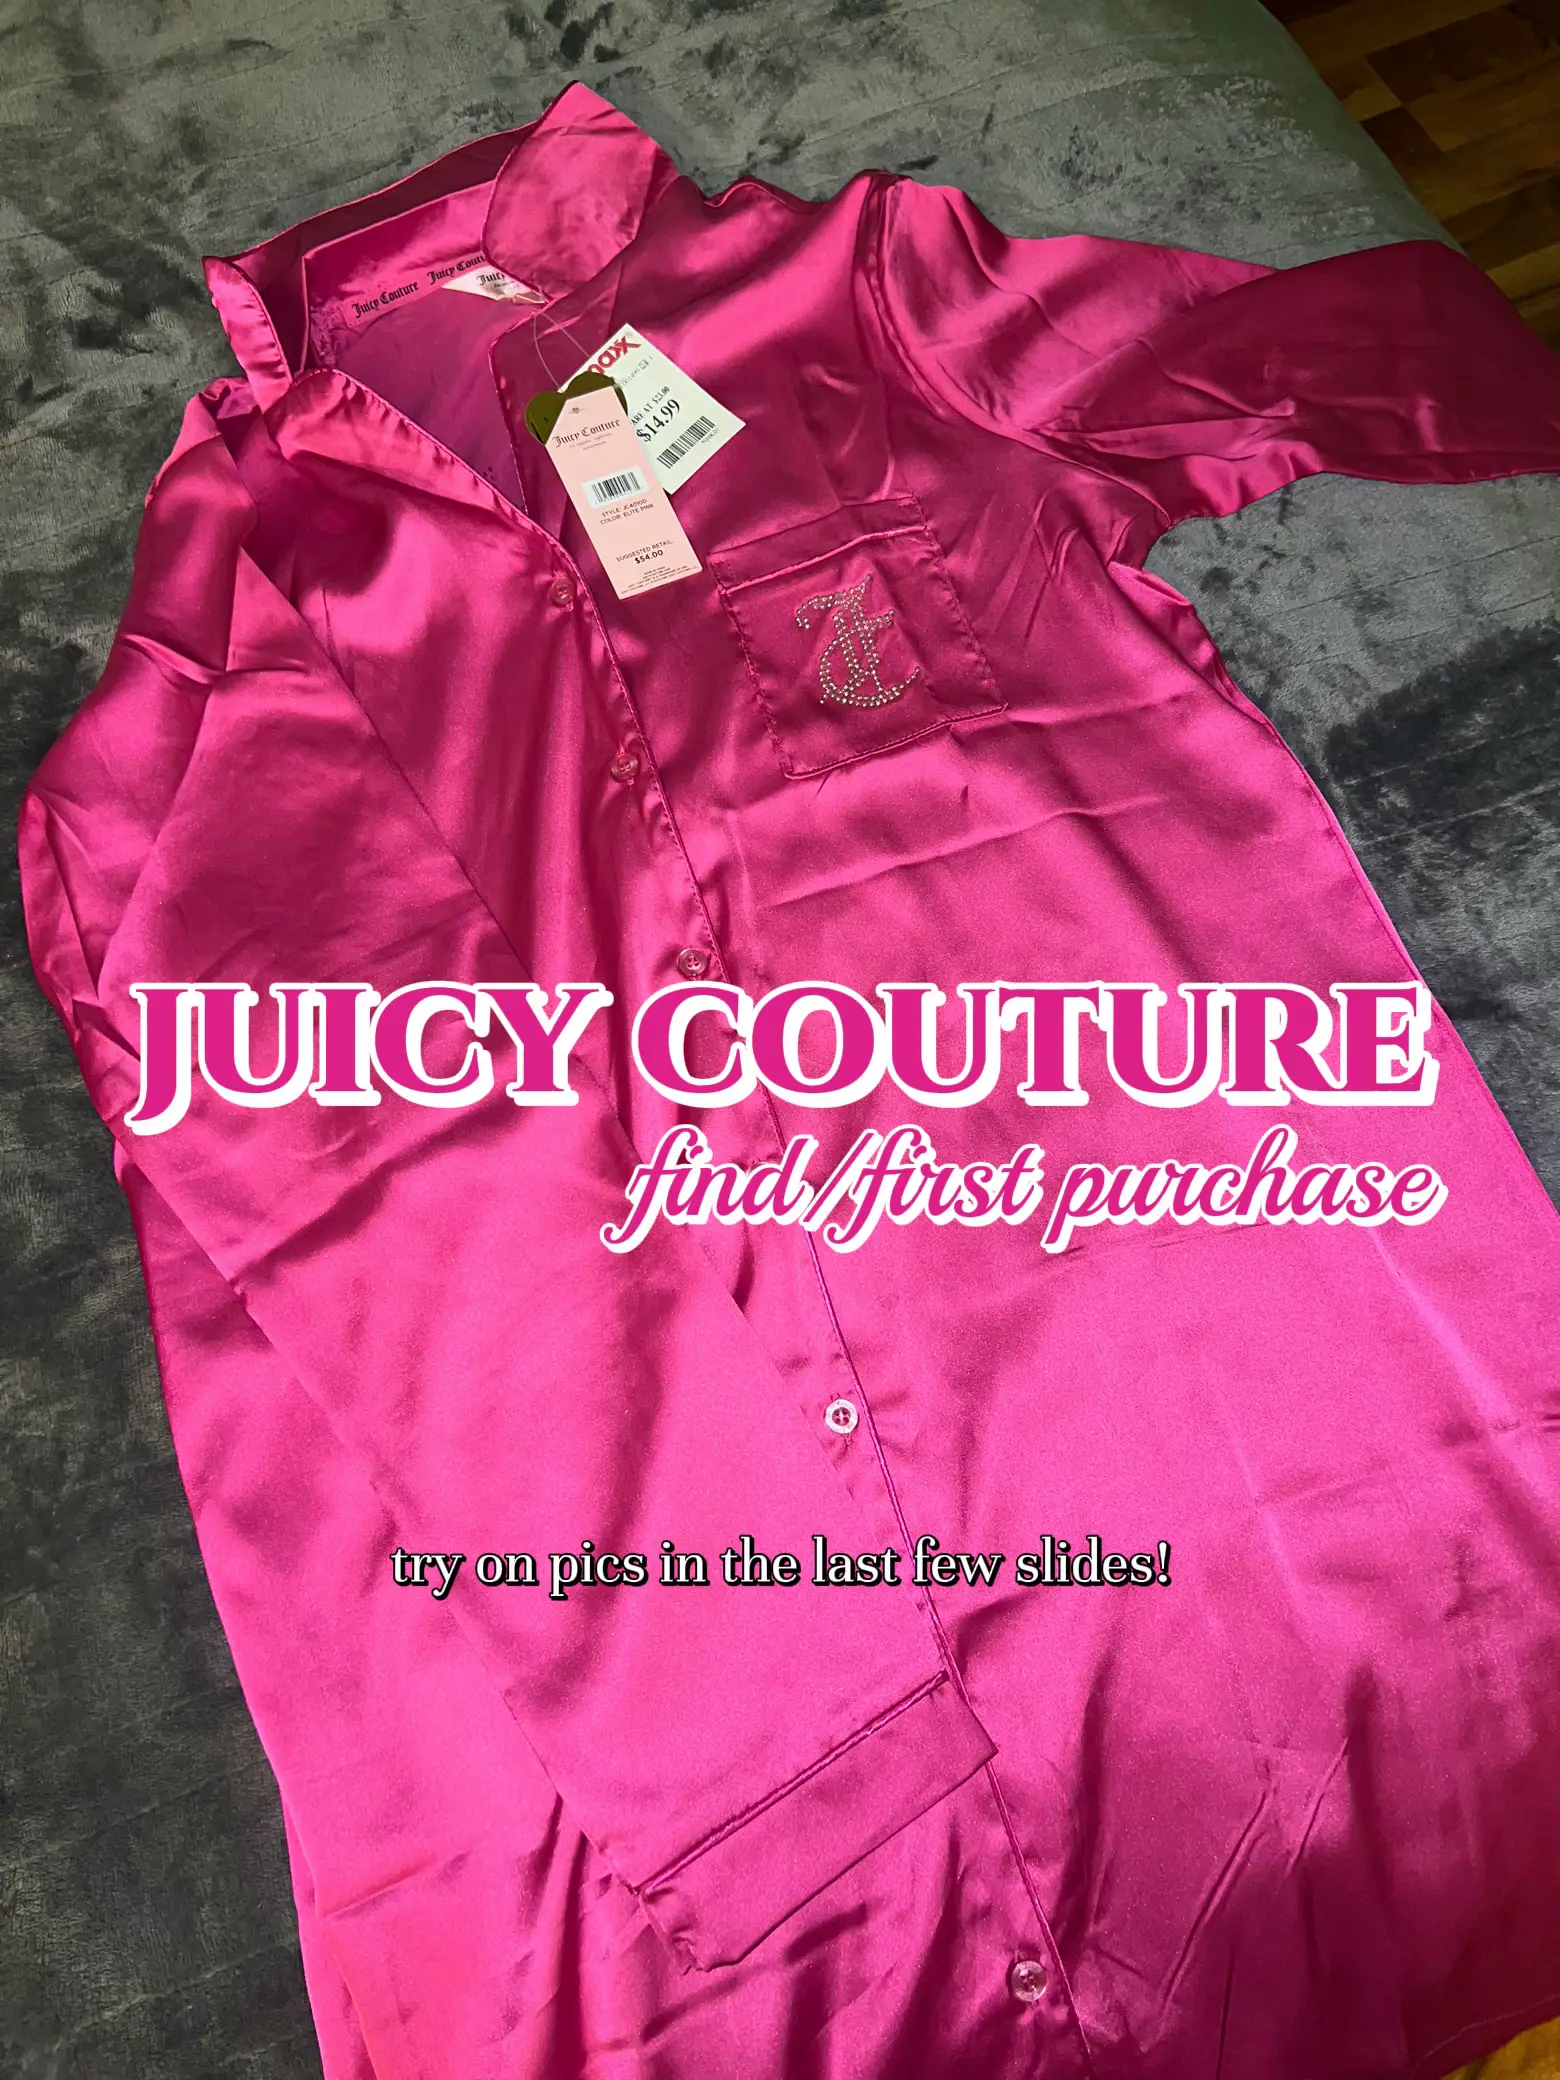 Juicy Couture Sleepwear - Lemon8 Search